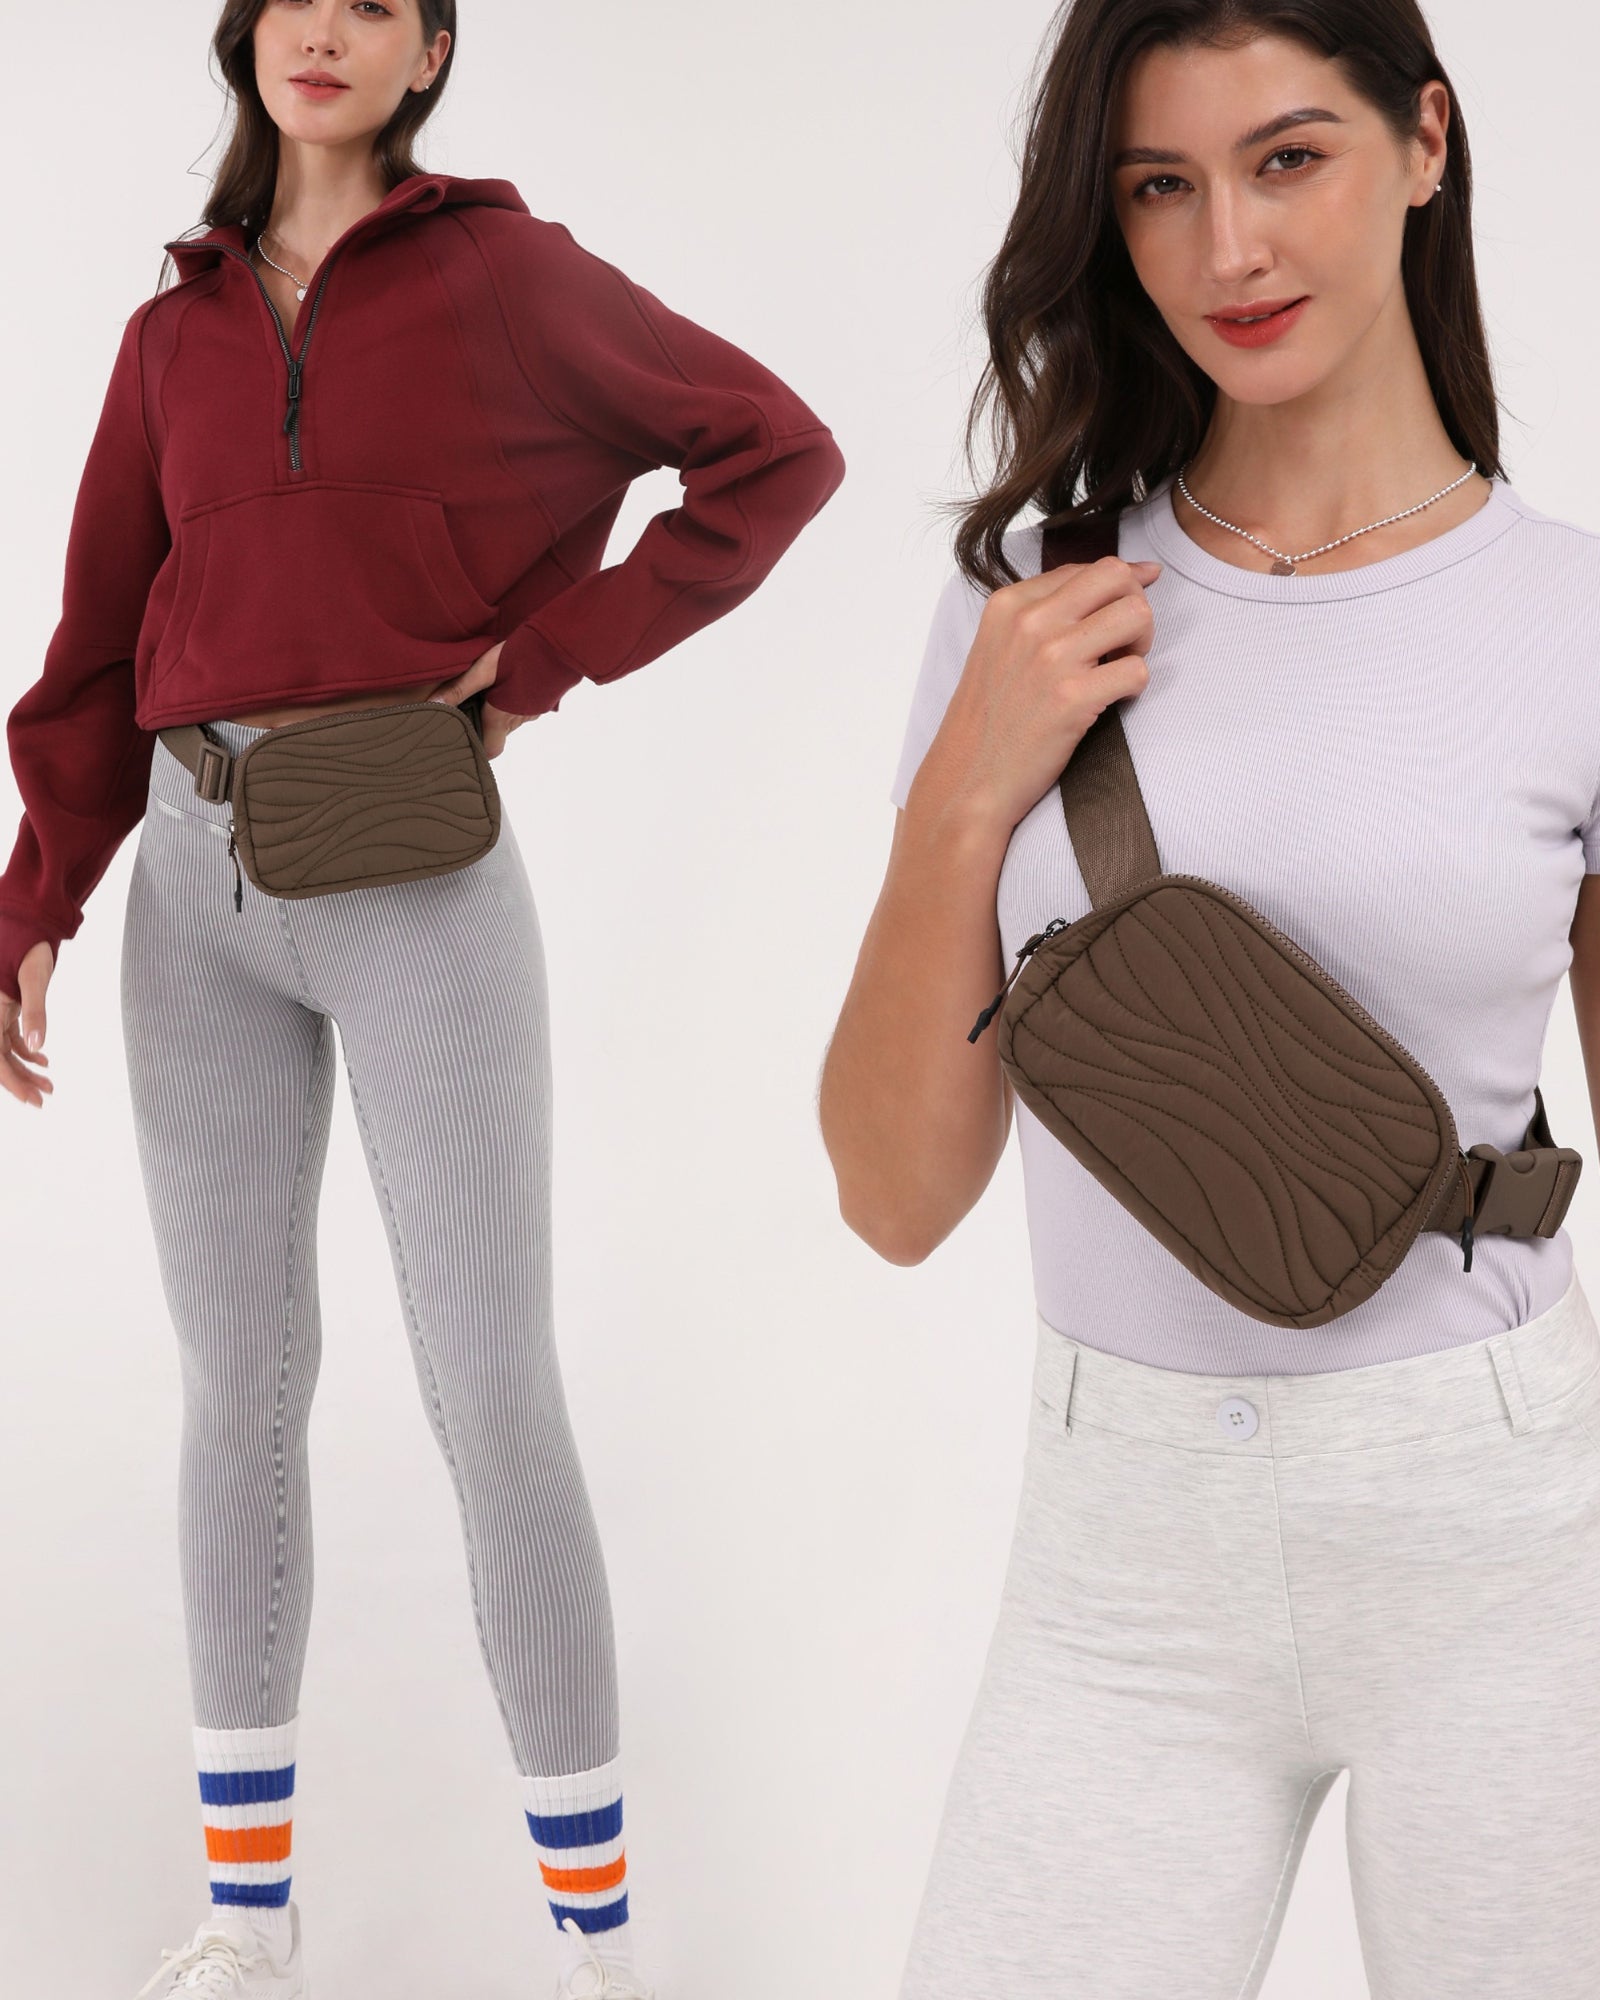 Quilted Designer Mini Belt Bag - ododos